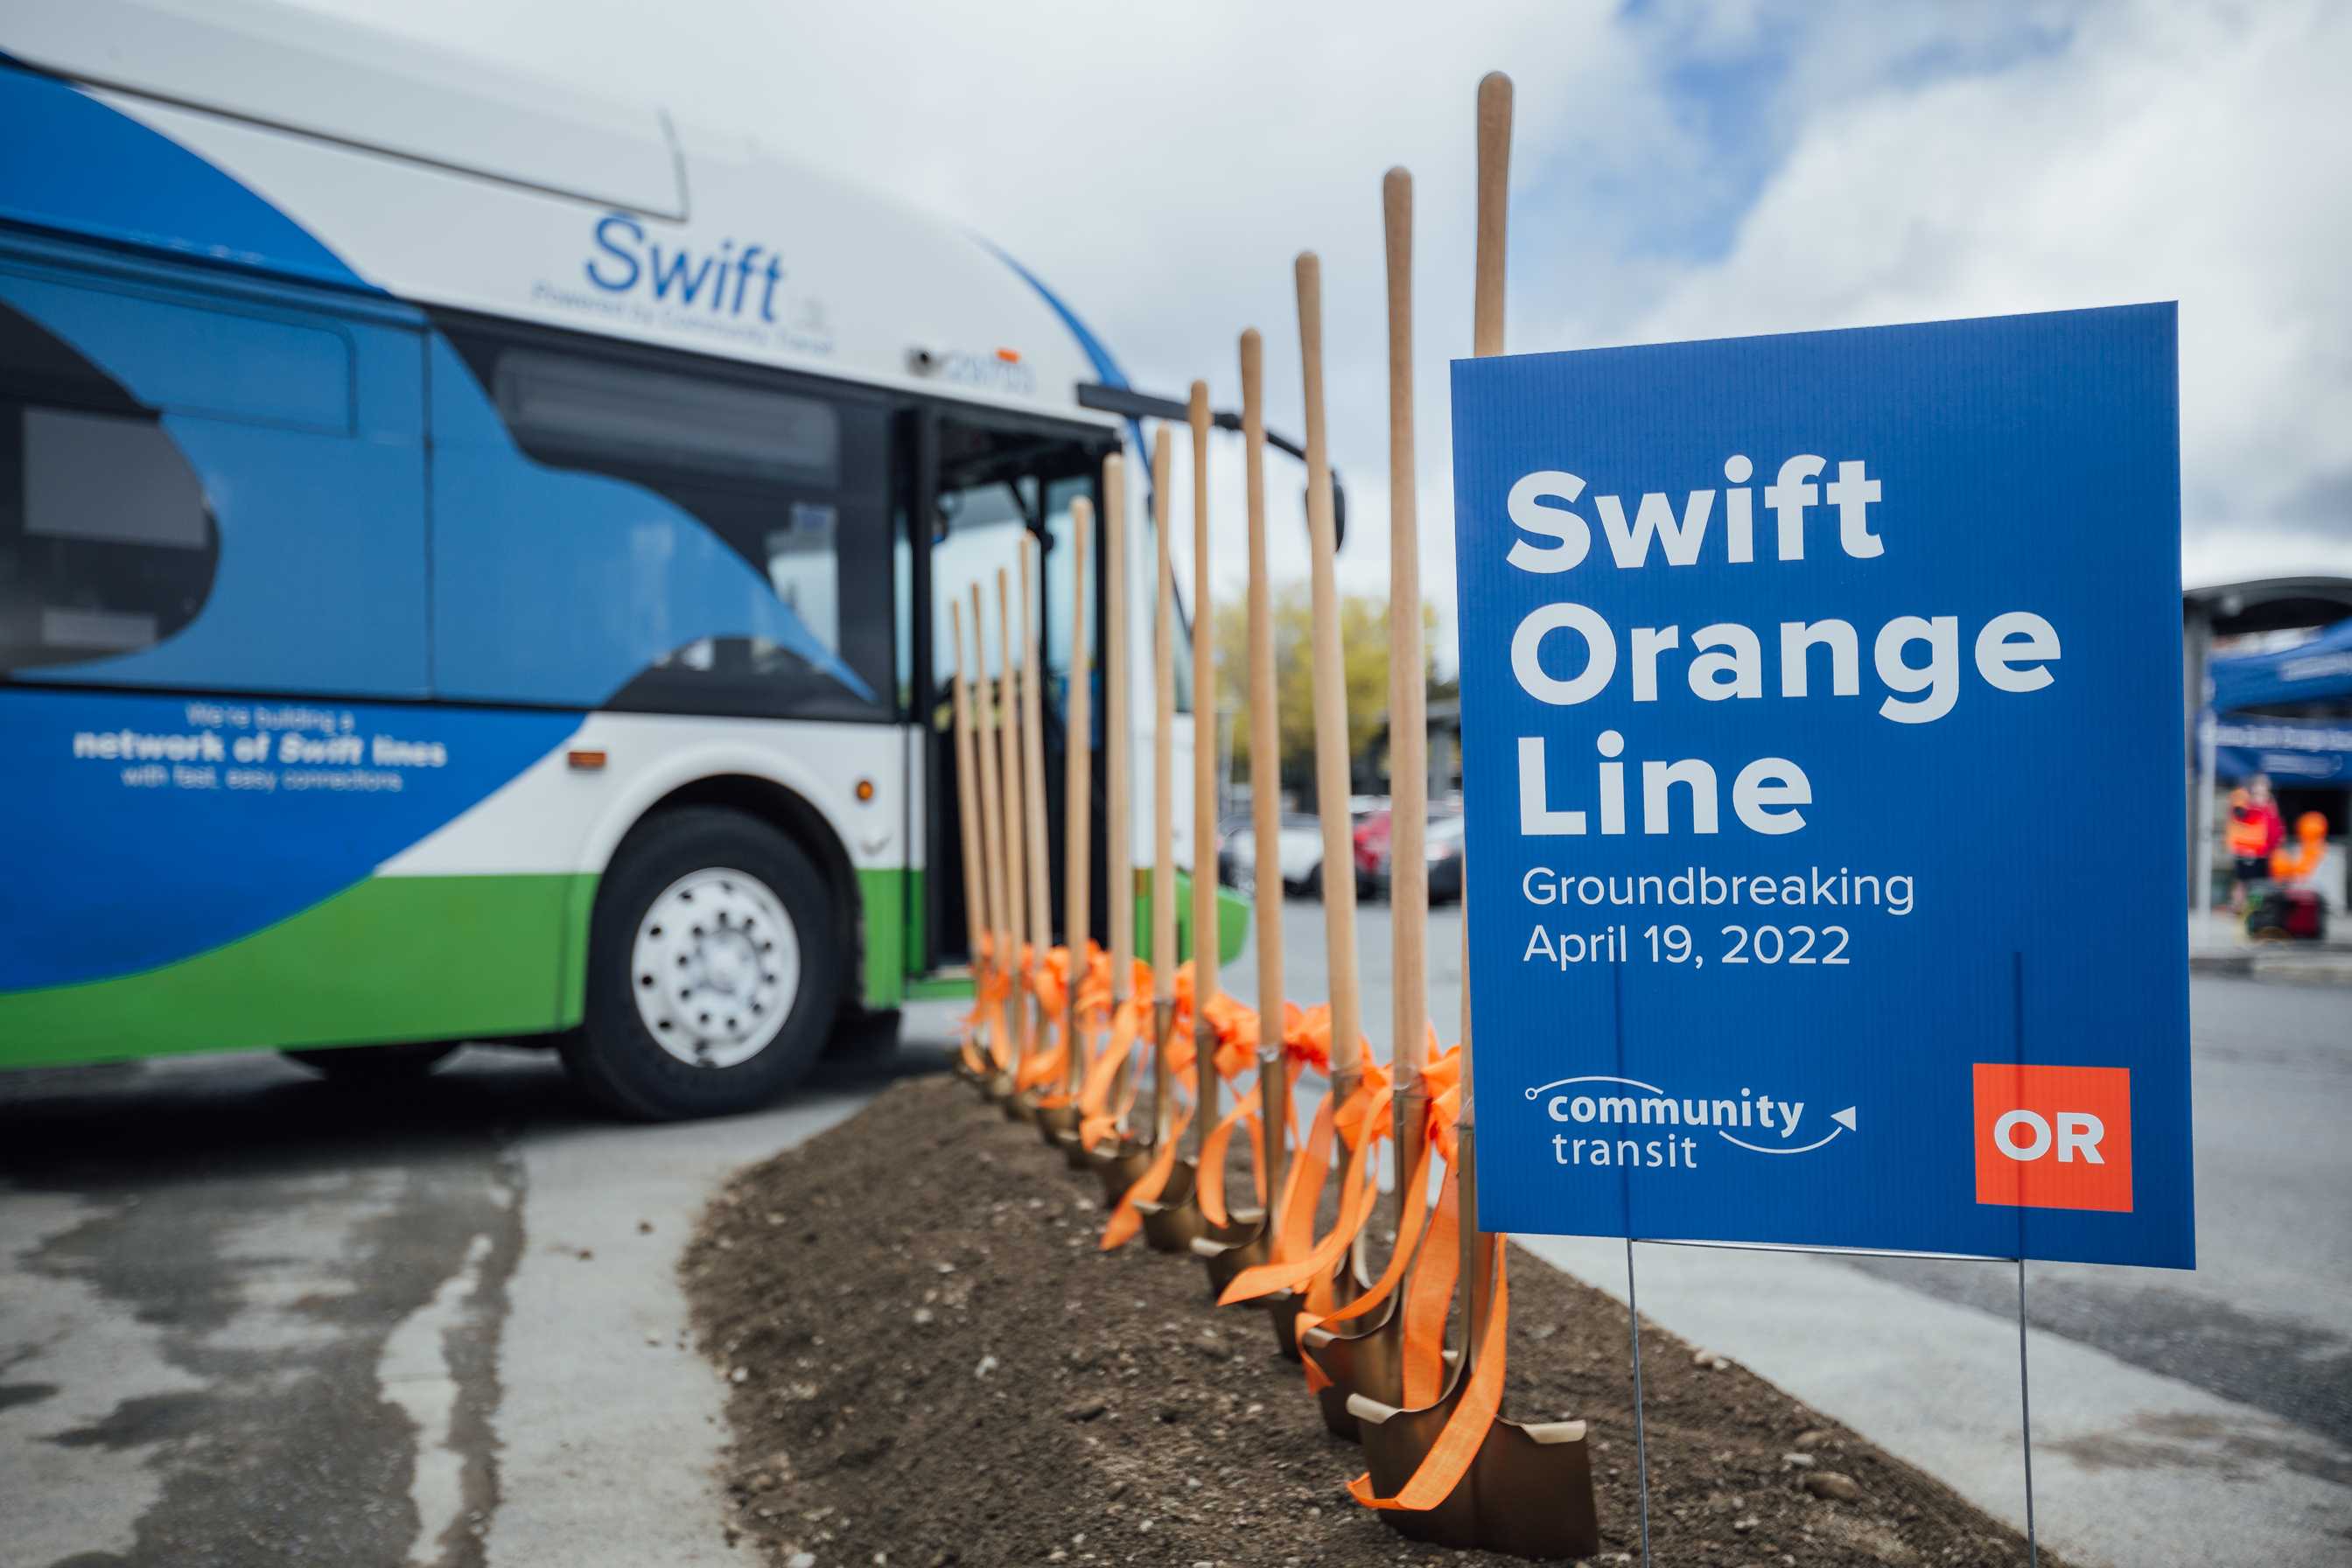 Swift Orange Line project breaks ground